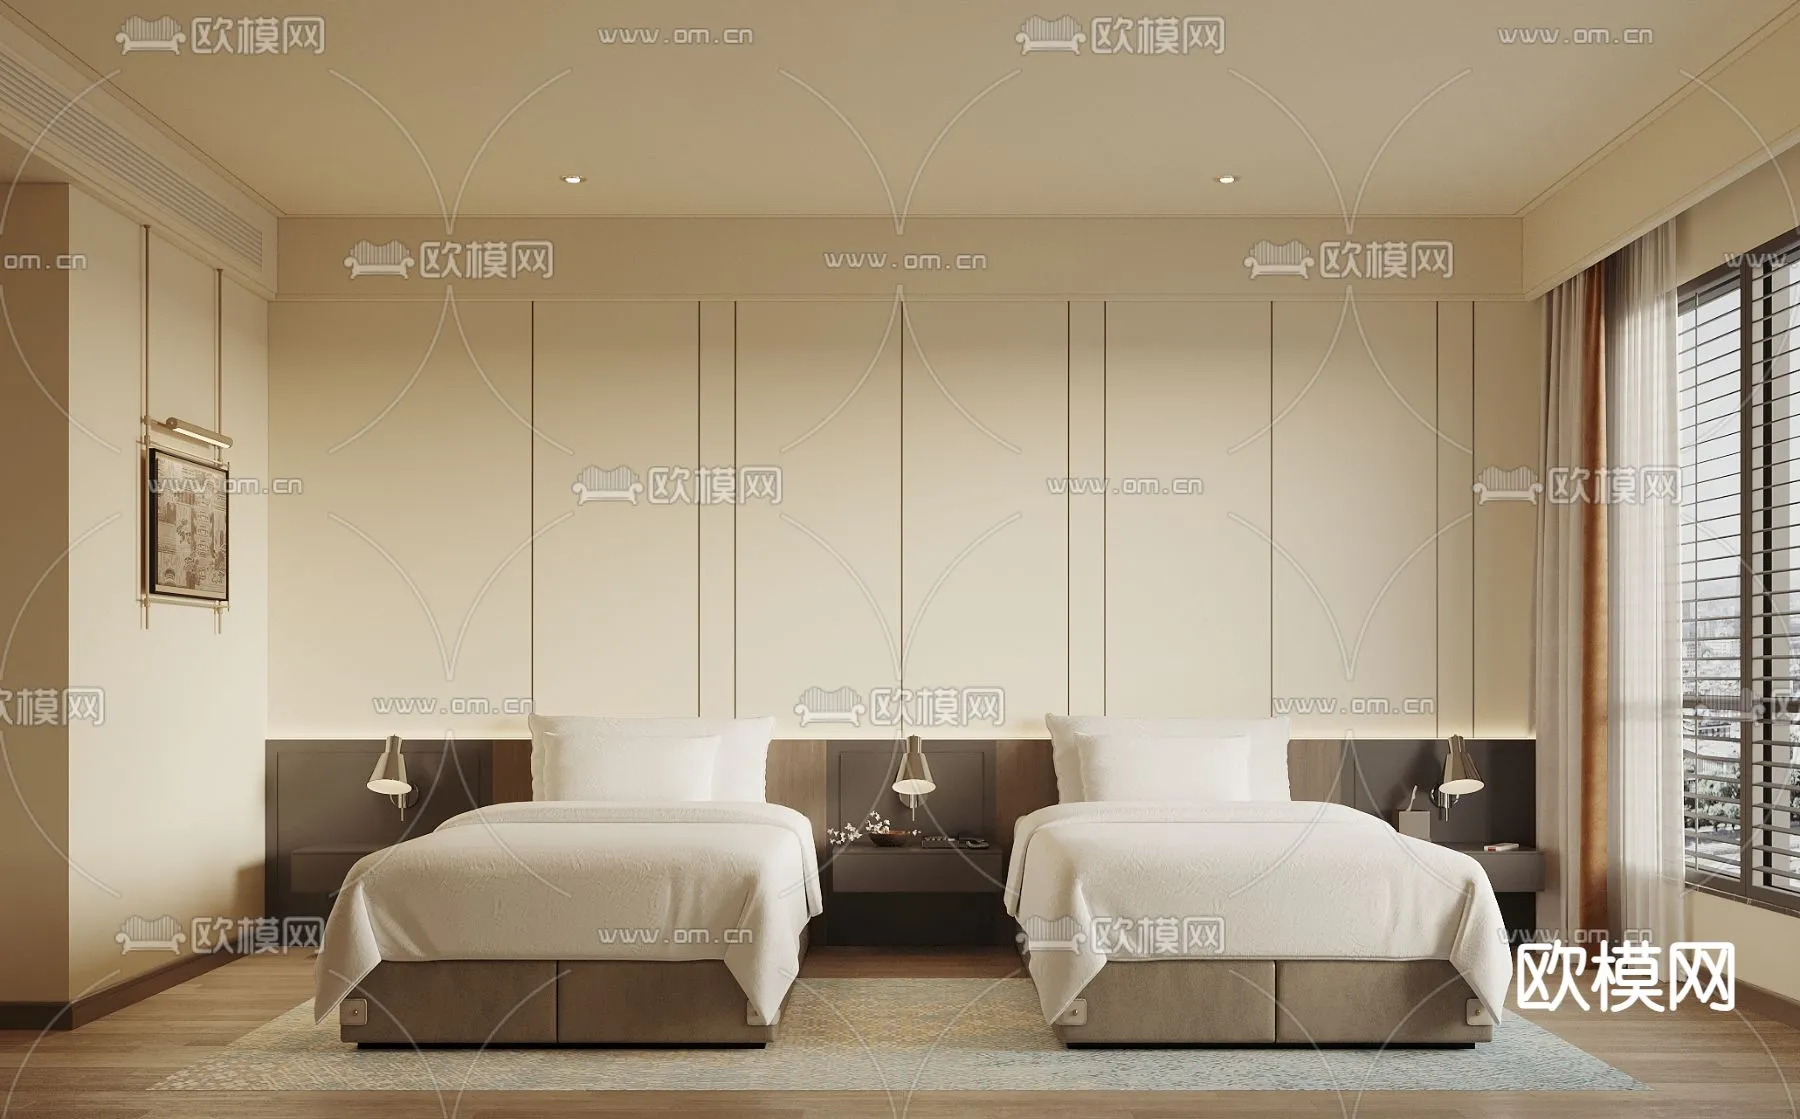 Hotel Room – Bedroom For Hotel 3D Models – 012